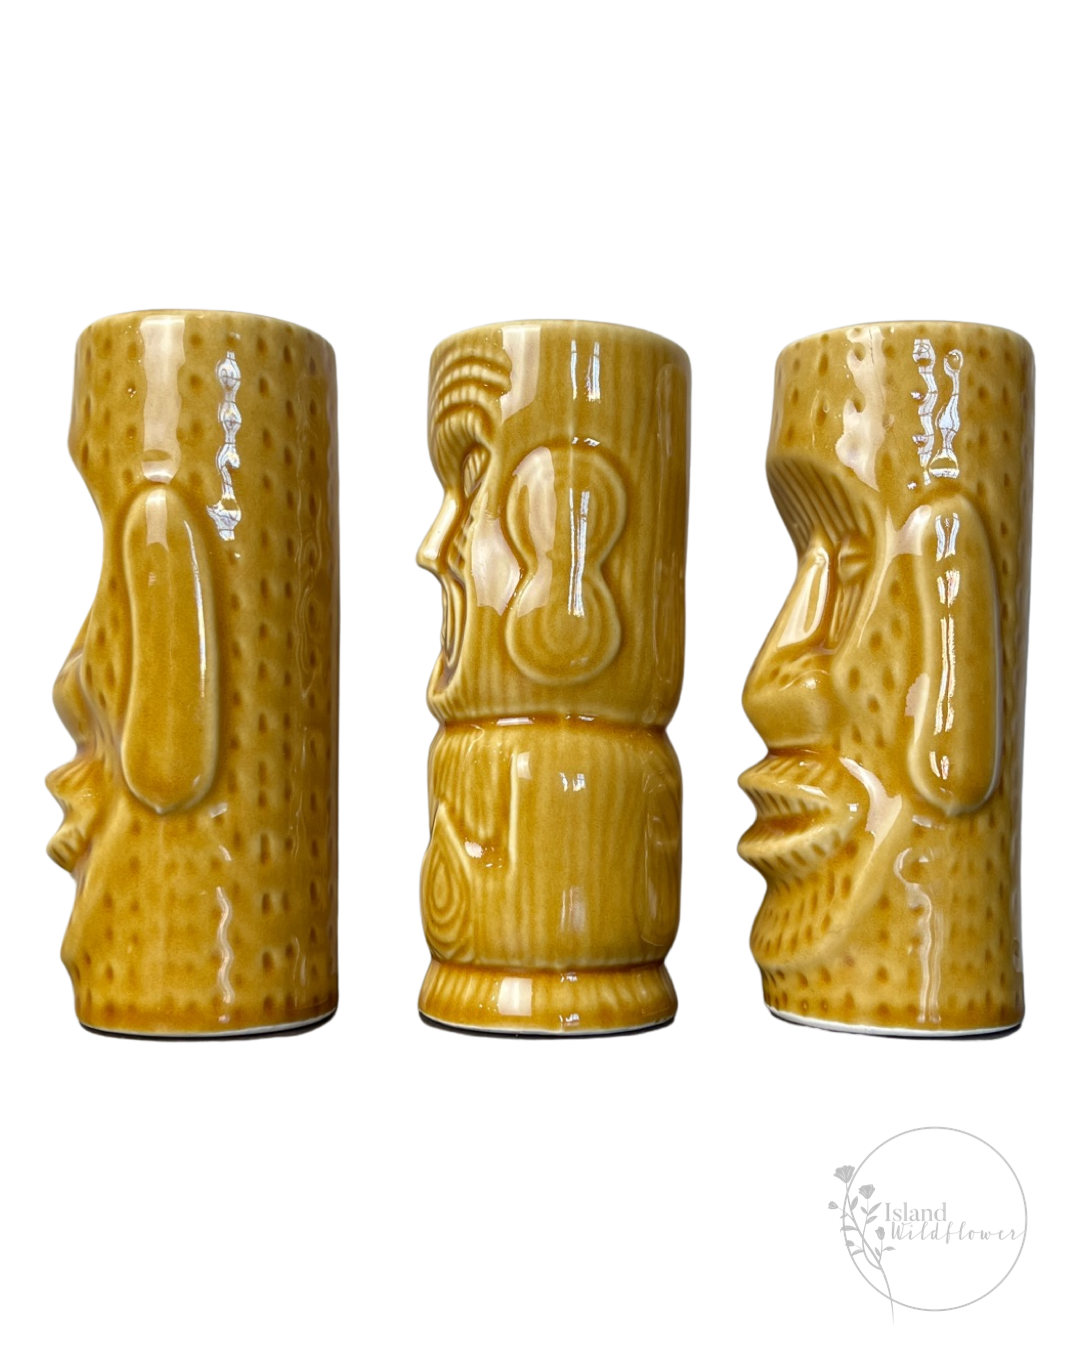 Side view: Exotic Tiki Mug Trio - Set of Three Ceramic Tiki Mugs in Golden Brown Glaze